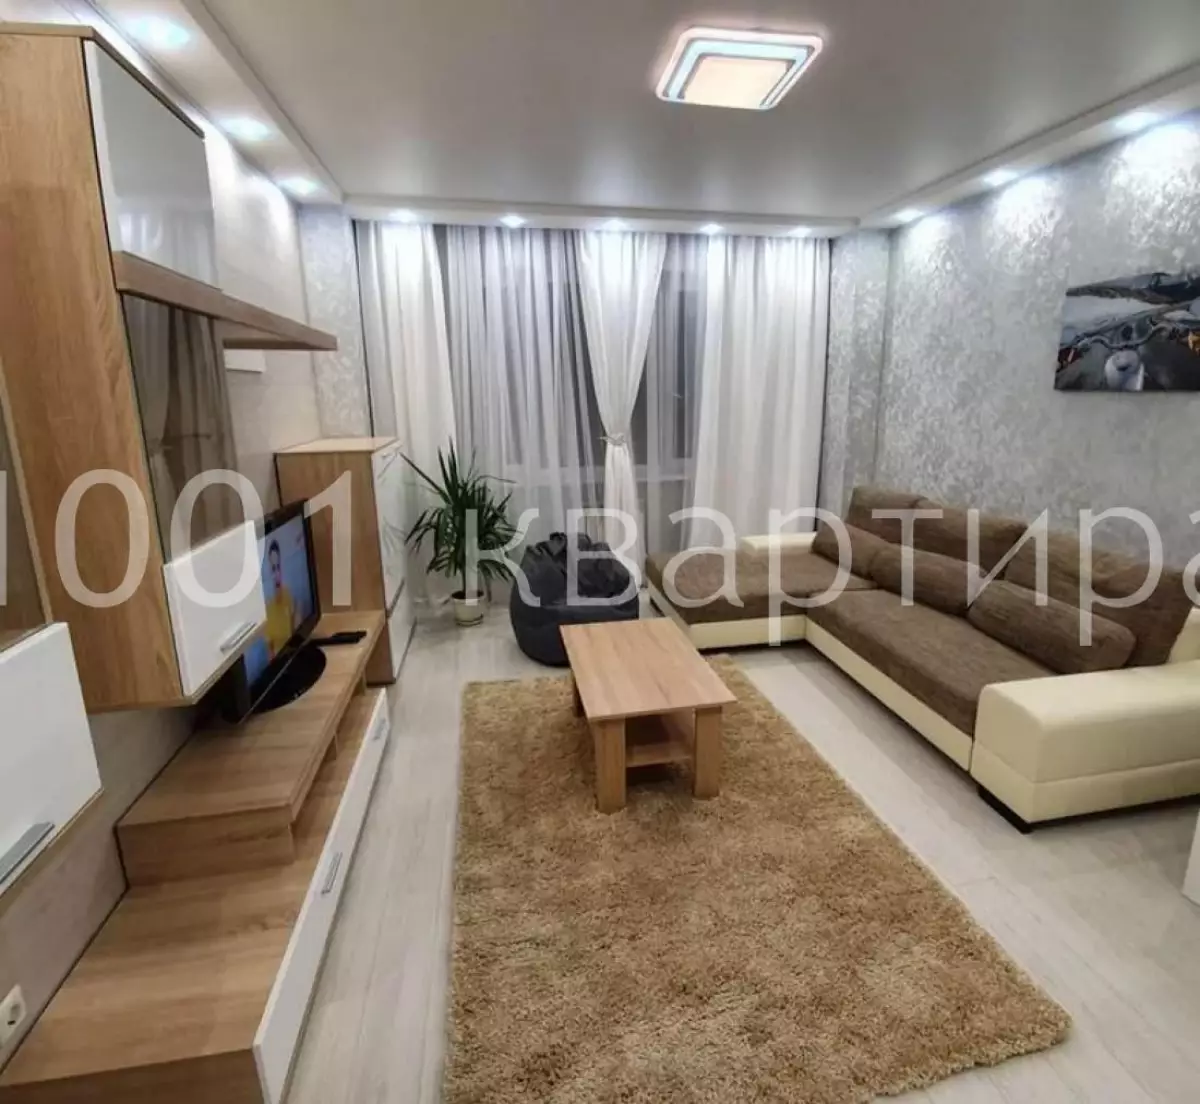 Вариант #137793 для аренды посуточно в Самаре Артёмовская , д.22 на 5 гостей - фото 1